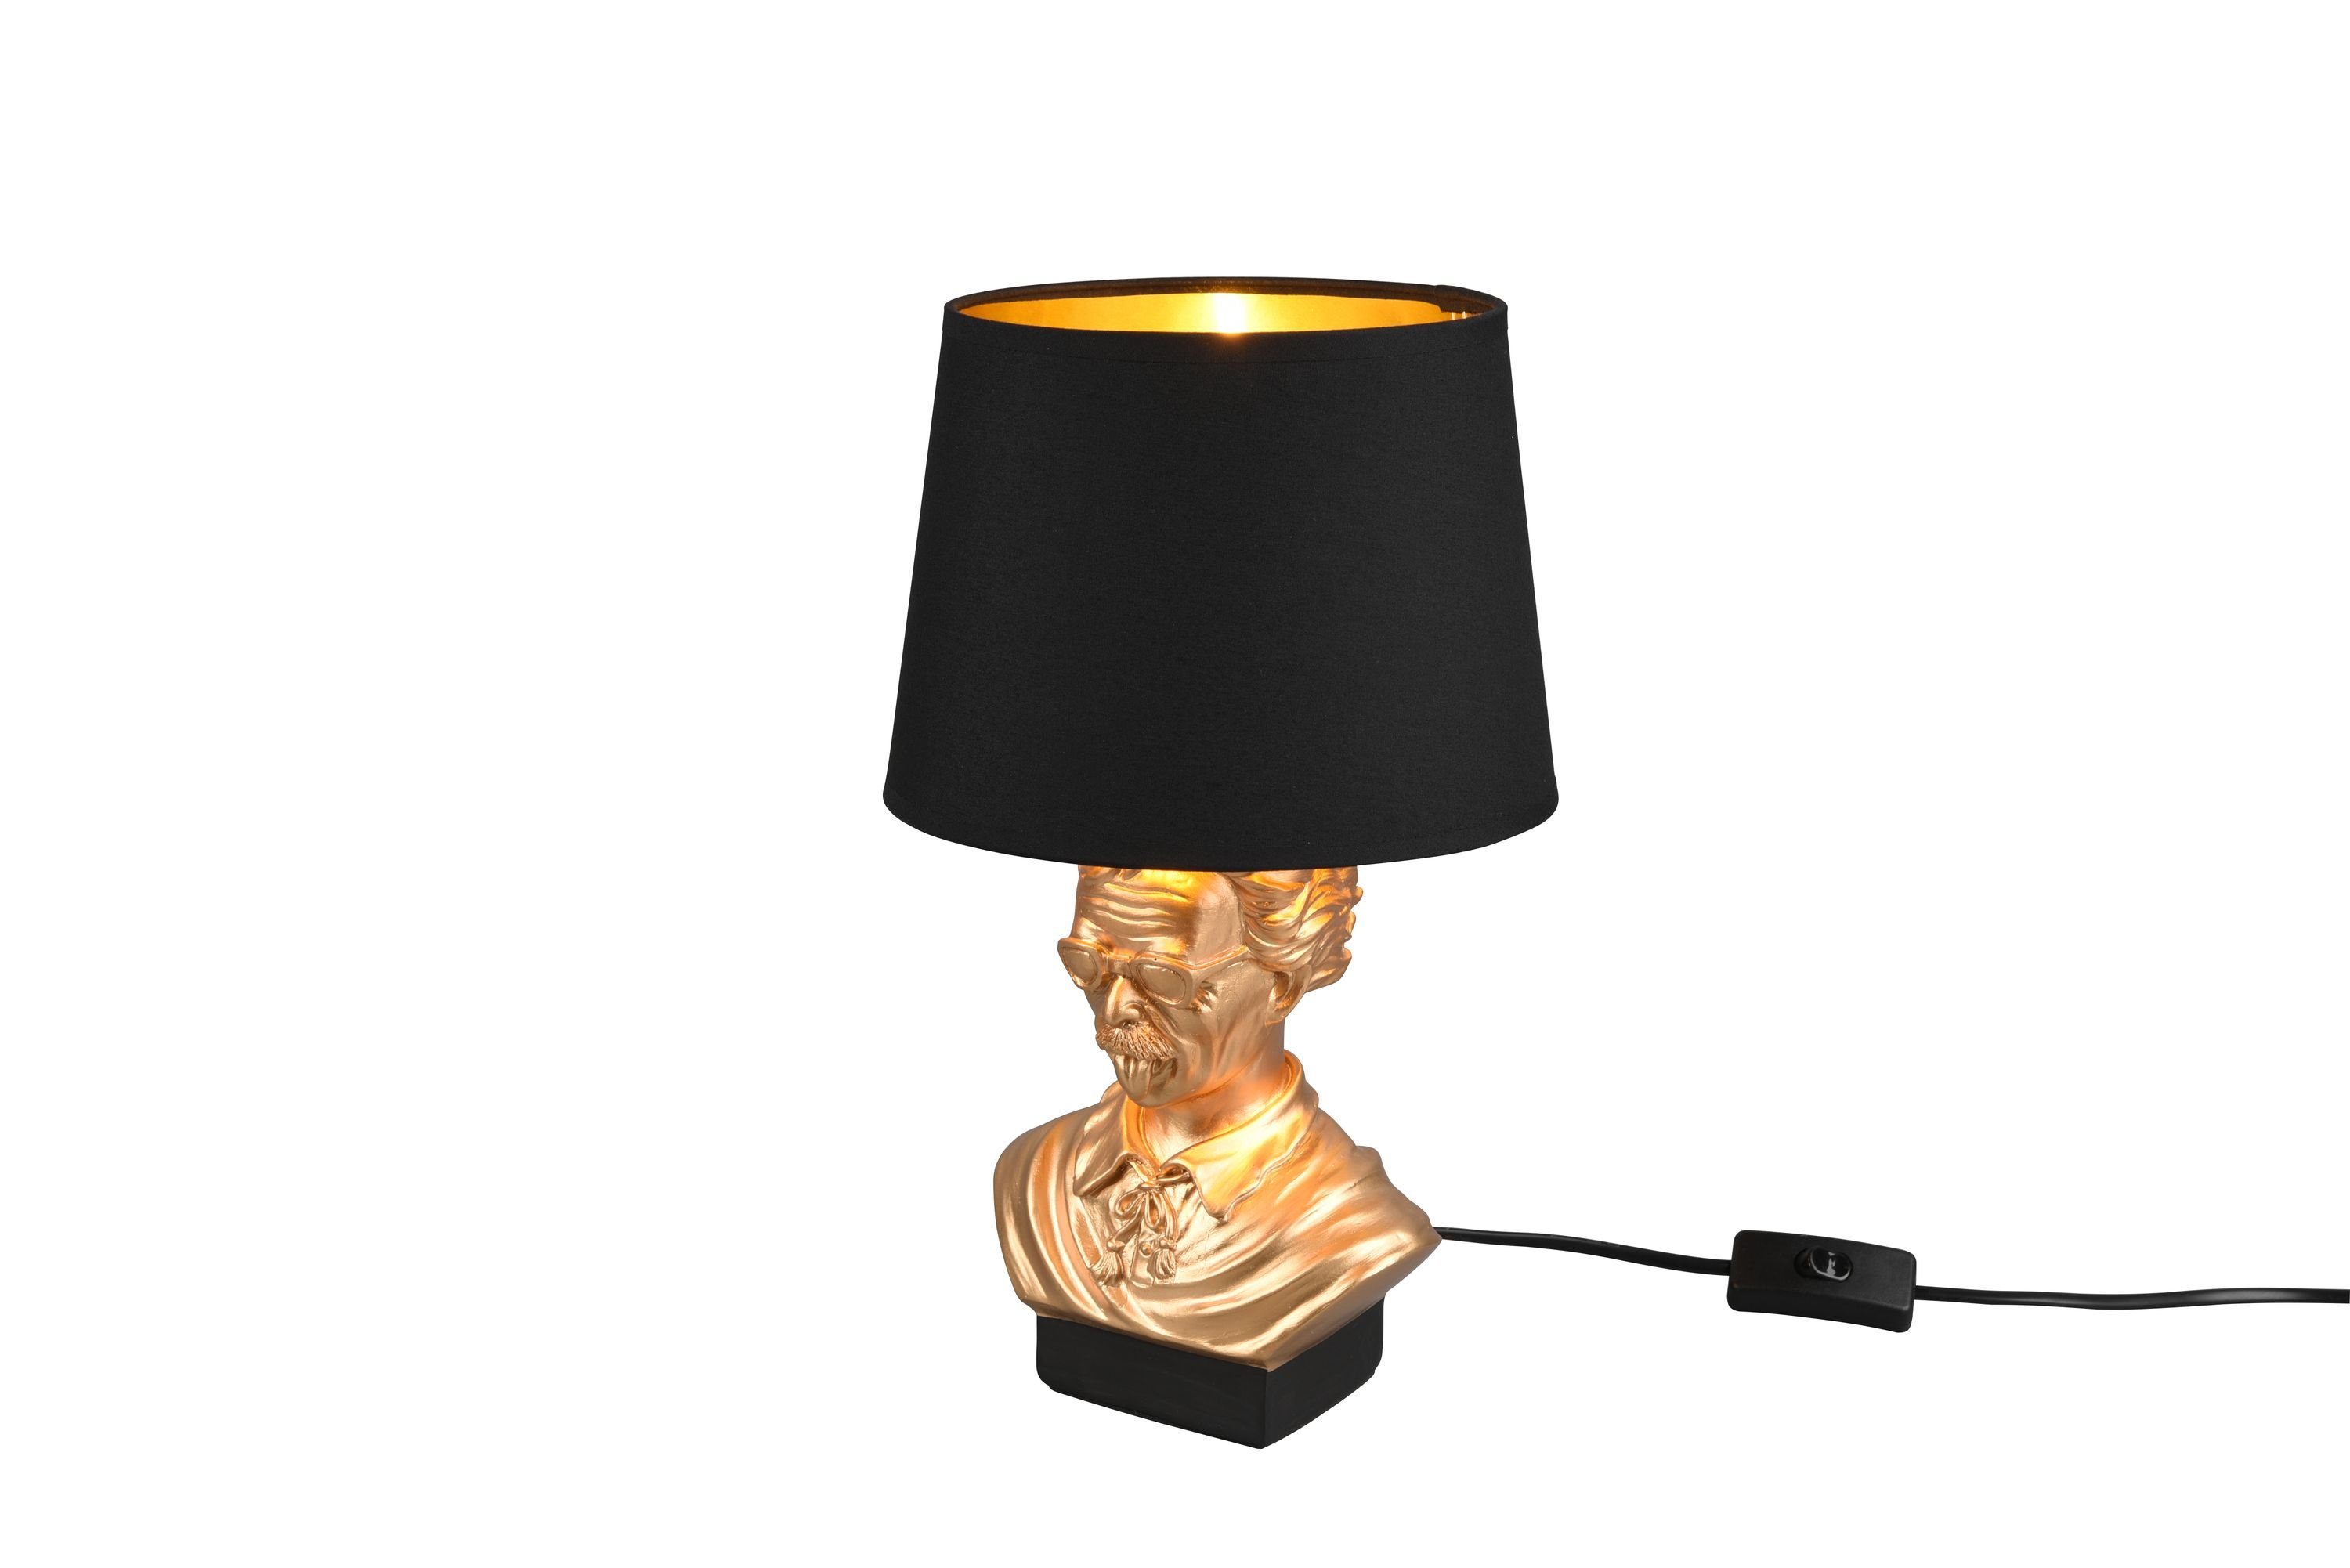 TRIO Albert, Leuchten Design Höhe36cm schwarz&gold Leuchtmittel, - ohne kaltweiß, Tischleuchte Schirm Kopf Ein-/Ausschalter, Schalter Schreibtischlampe Büste warmweiß -